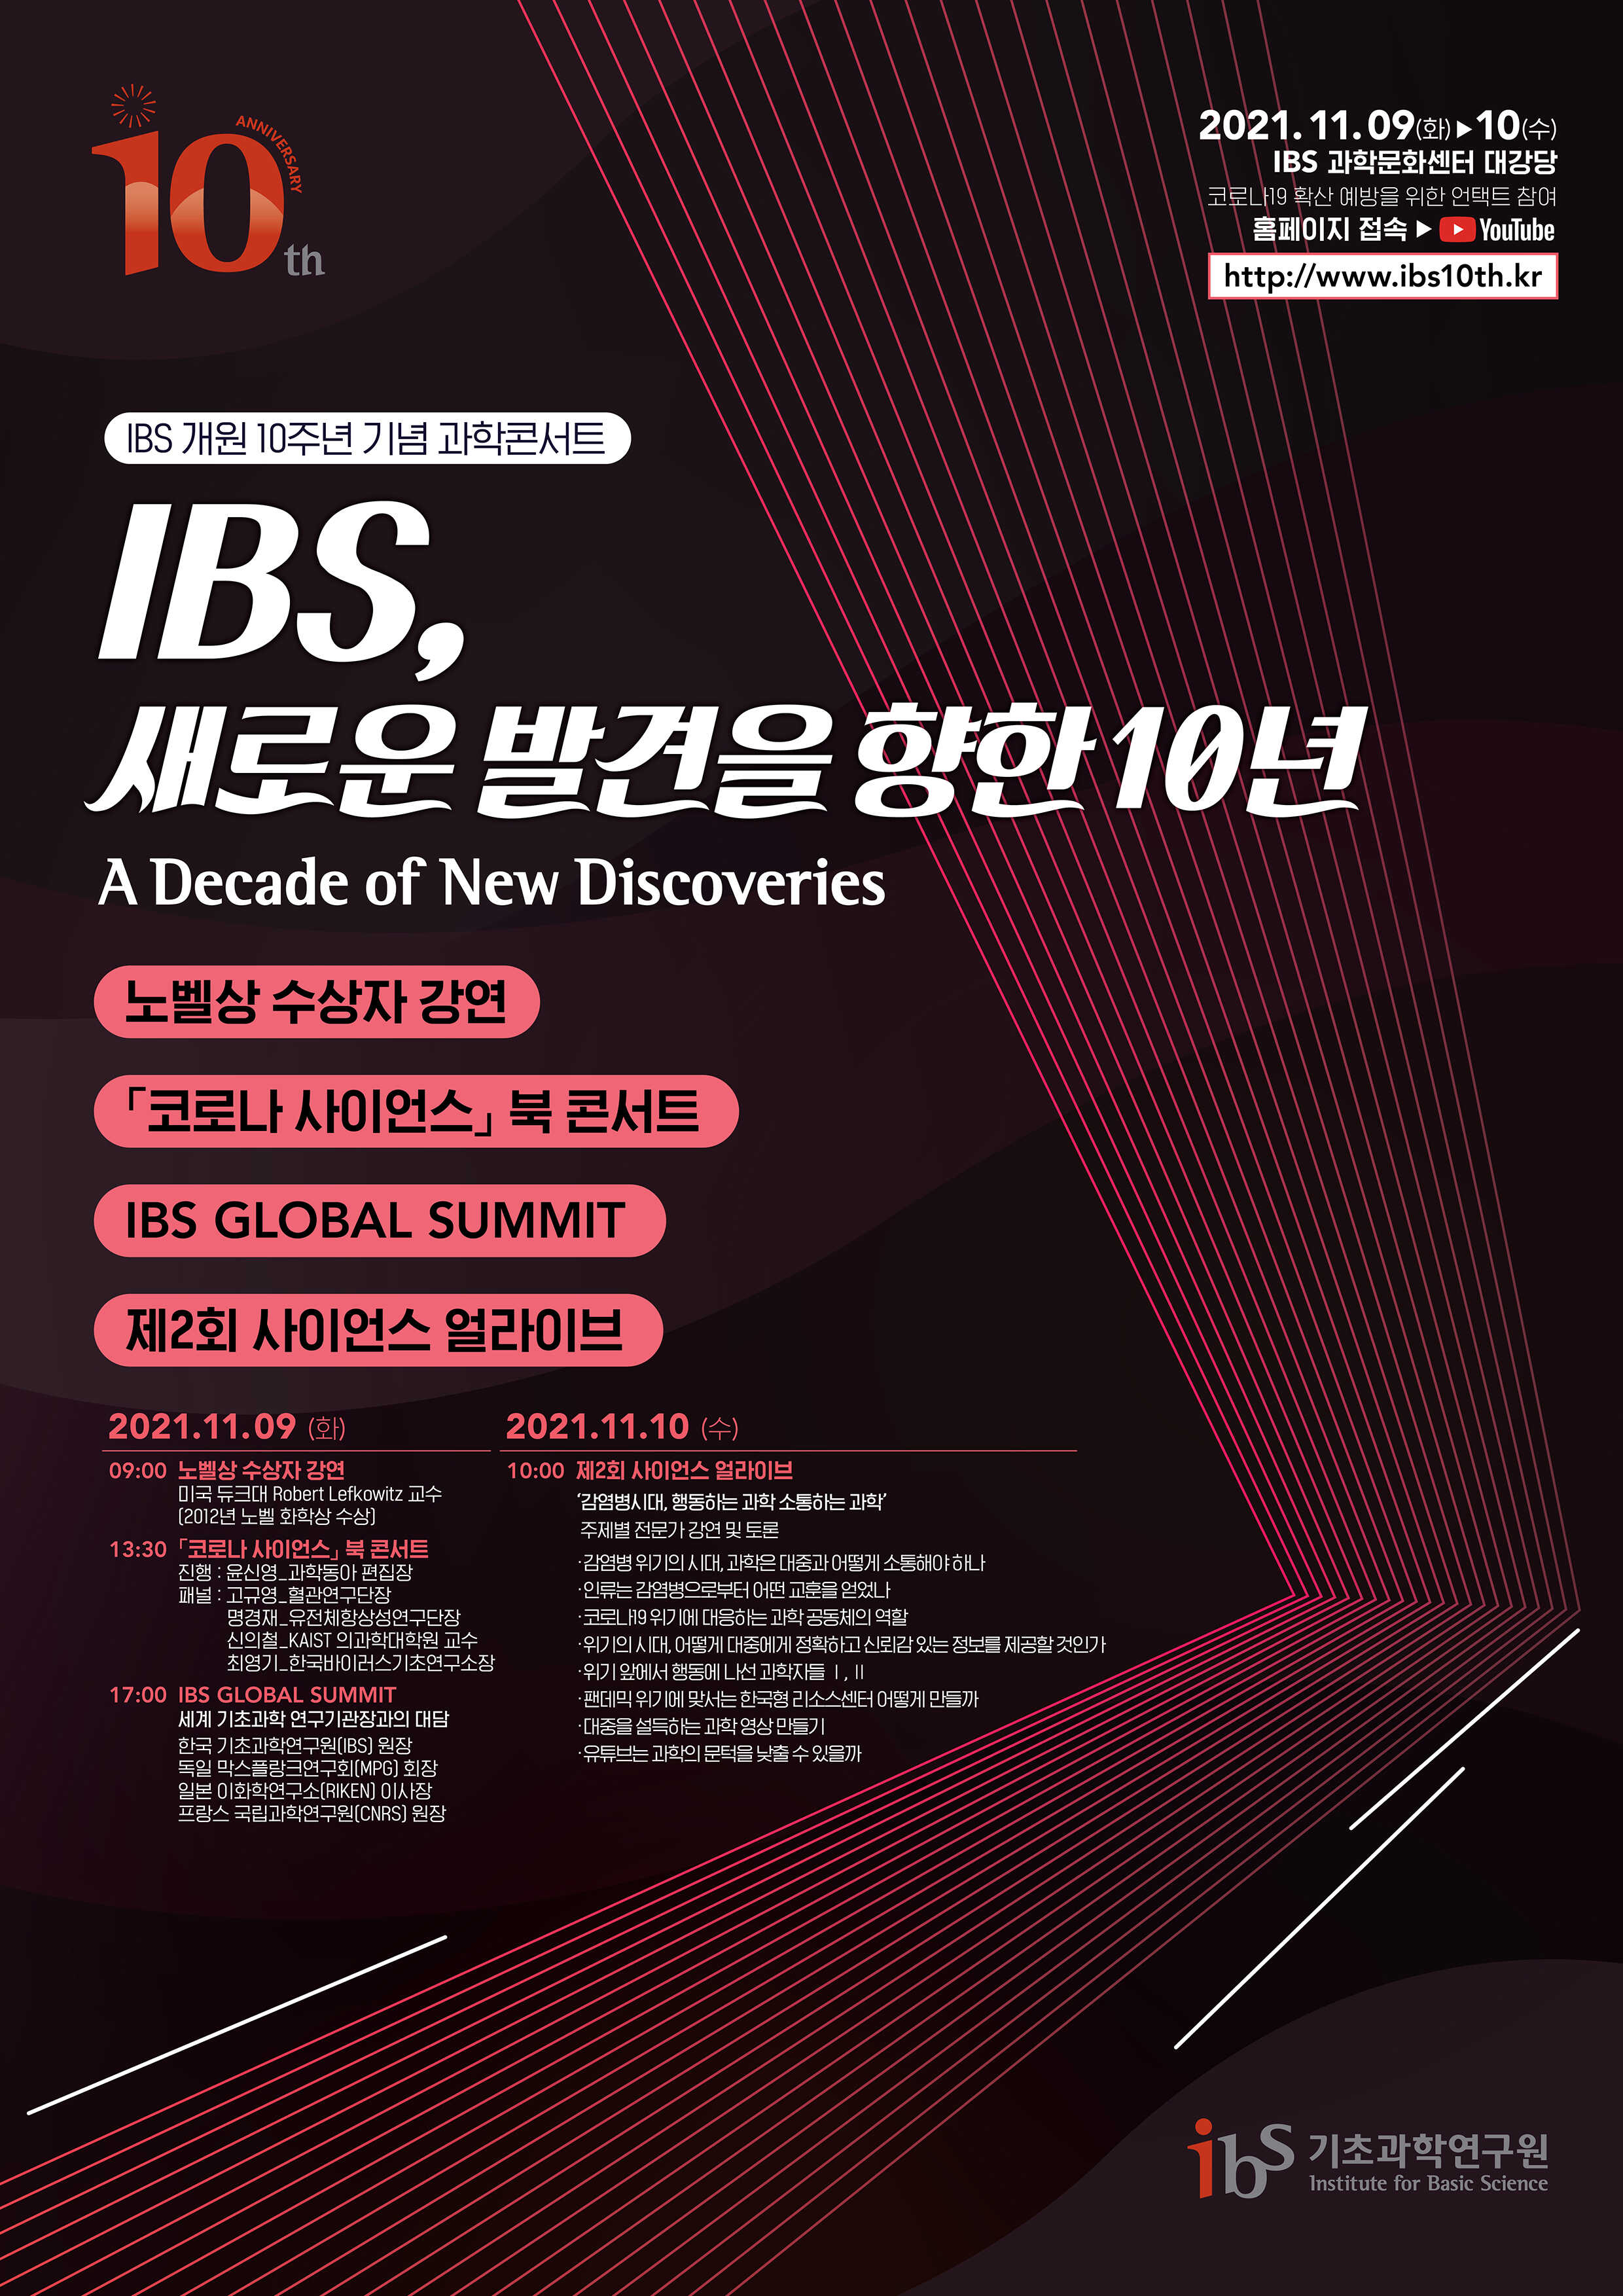 IBS 10주년 과학 콘서트 홍보 포스터 이미지로서 자세한 내용은 하단에 위치해 있습니다.